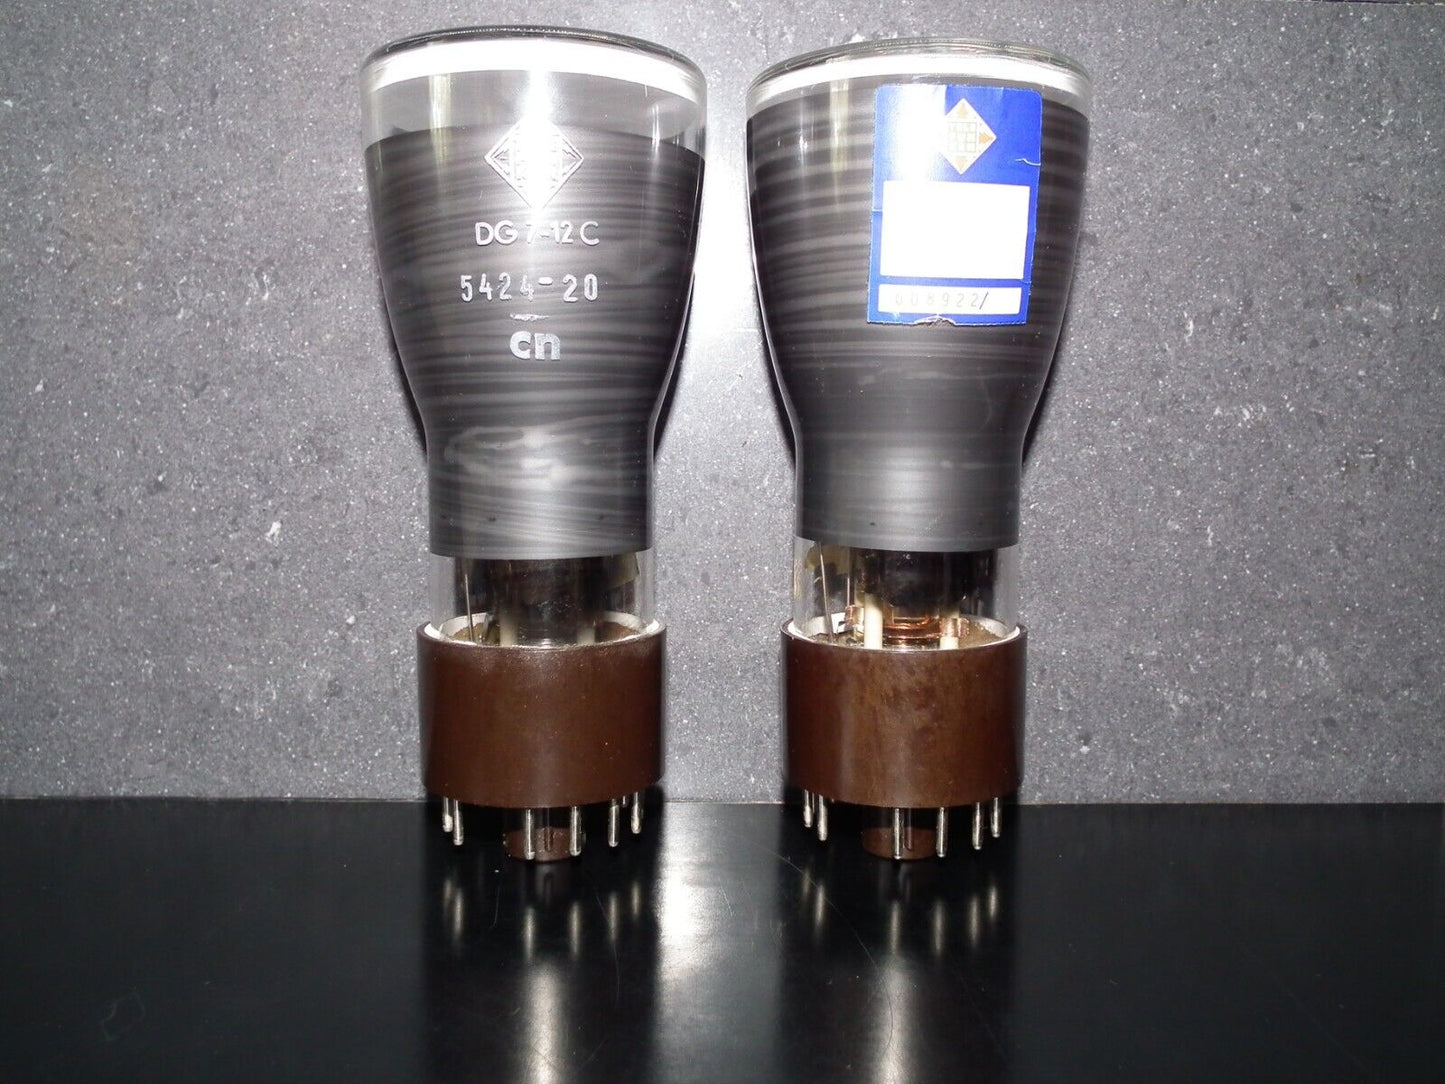 DG7-12C Telefunken Cathode Ray Tube NOS CRT Valve 3"